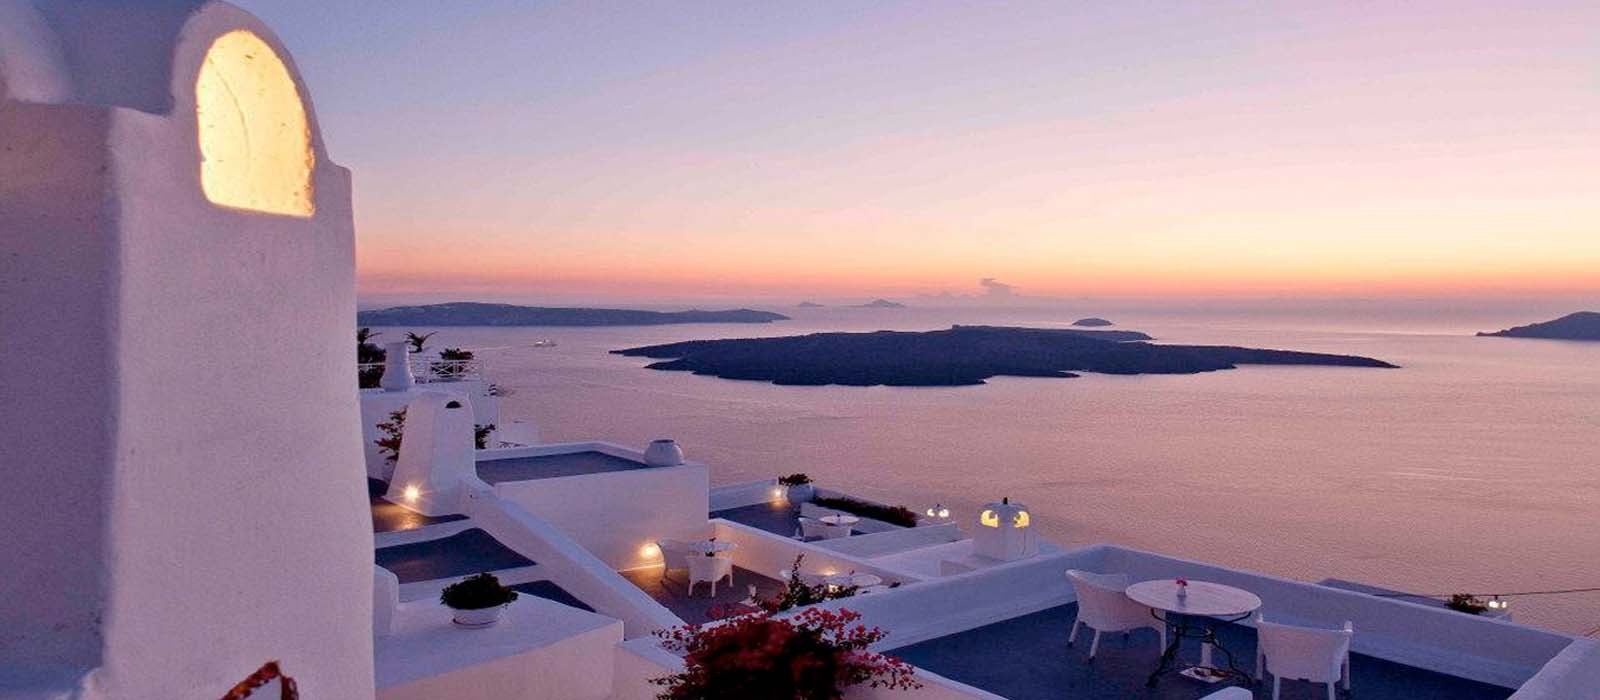 Cliff Side Suites Santorini - Luxury Greece Honeymoon Packages - Headers